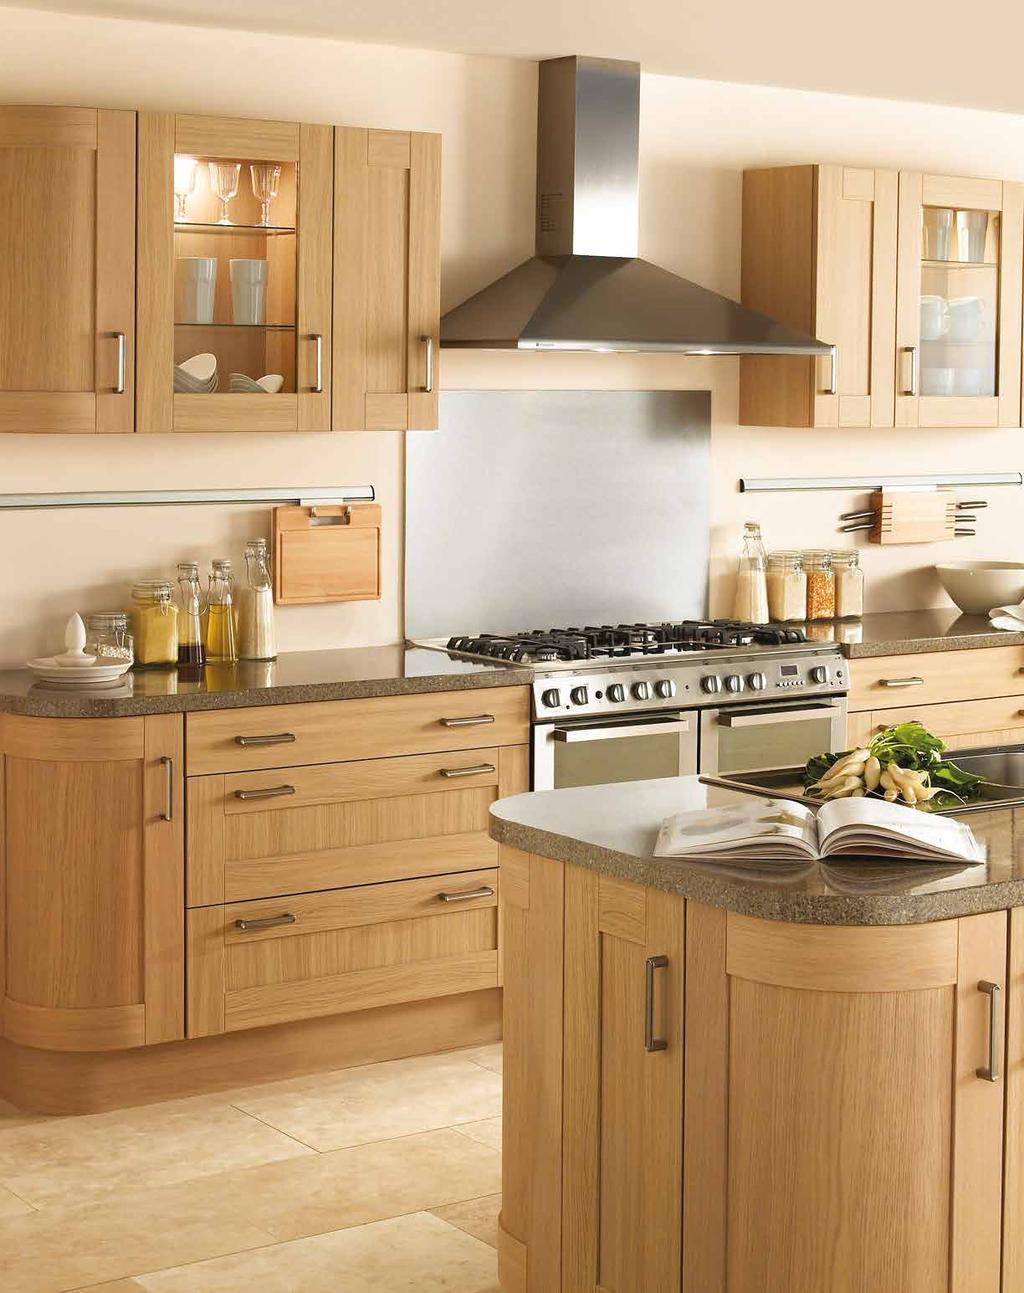 light woodgrain finish creates a stunning Shaker-style kitchen.